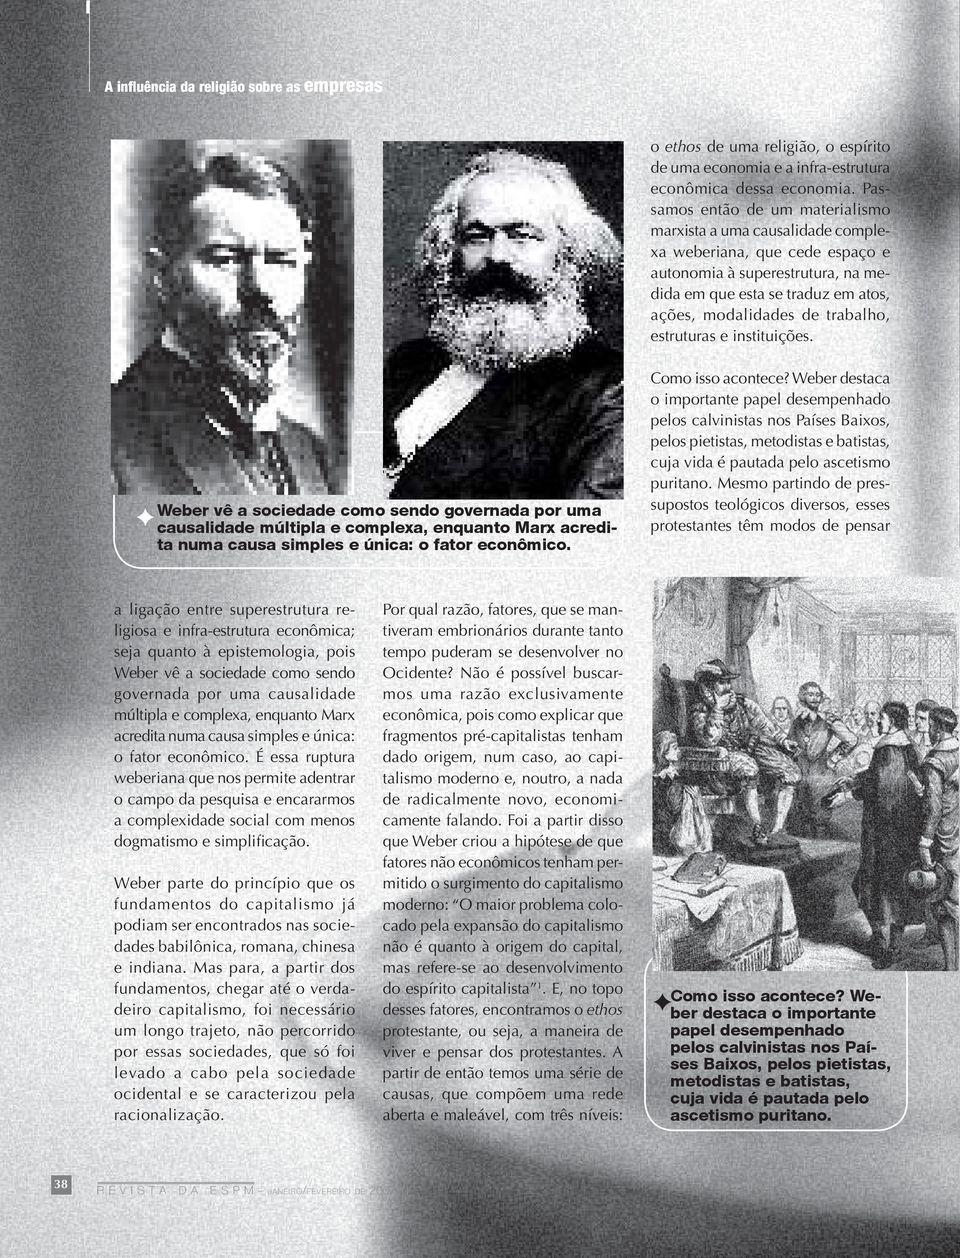 estruturas e instituições. Weber vê a sociedade como sendo governada por uma causalidade múltipla e complexa, enquanto Marx acredita numa causa simples e única: o fator econômico. Como isso acontece?